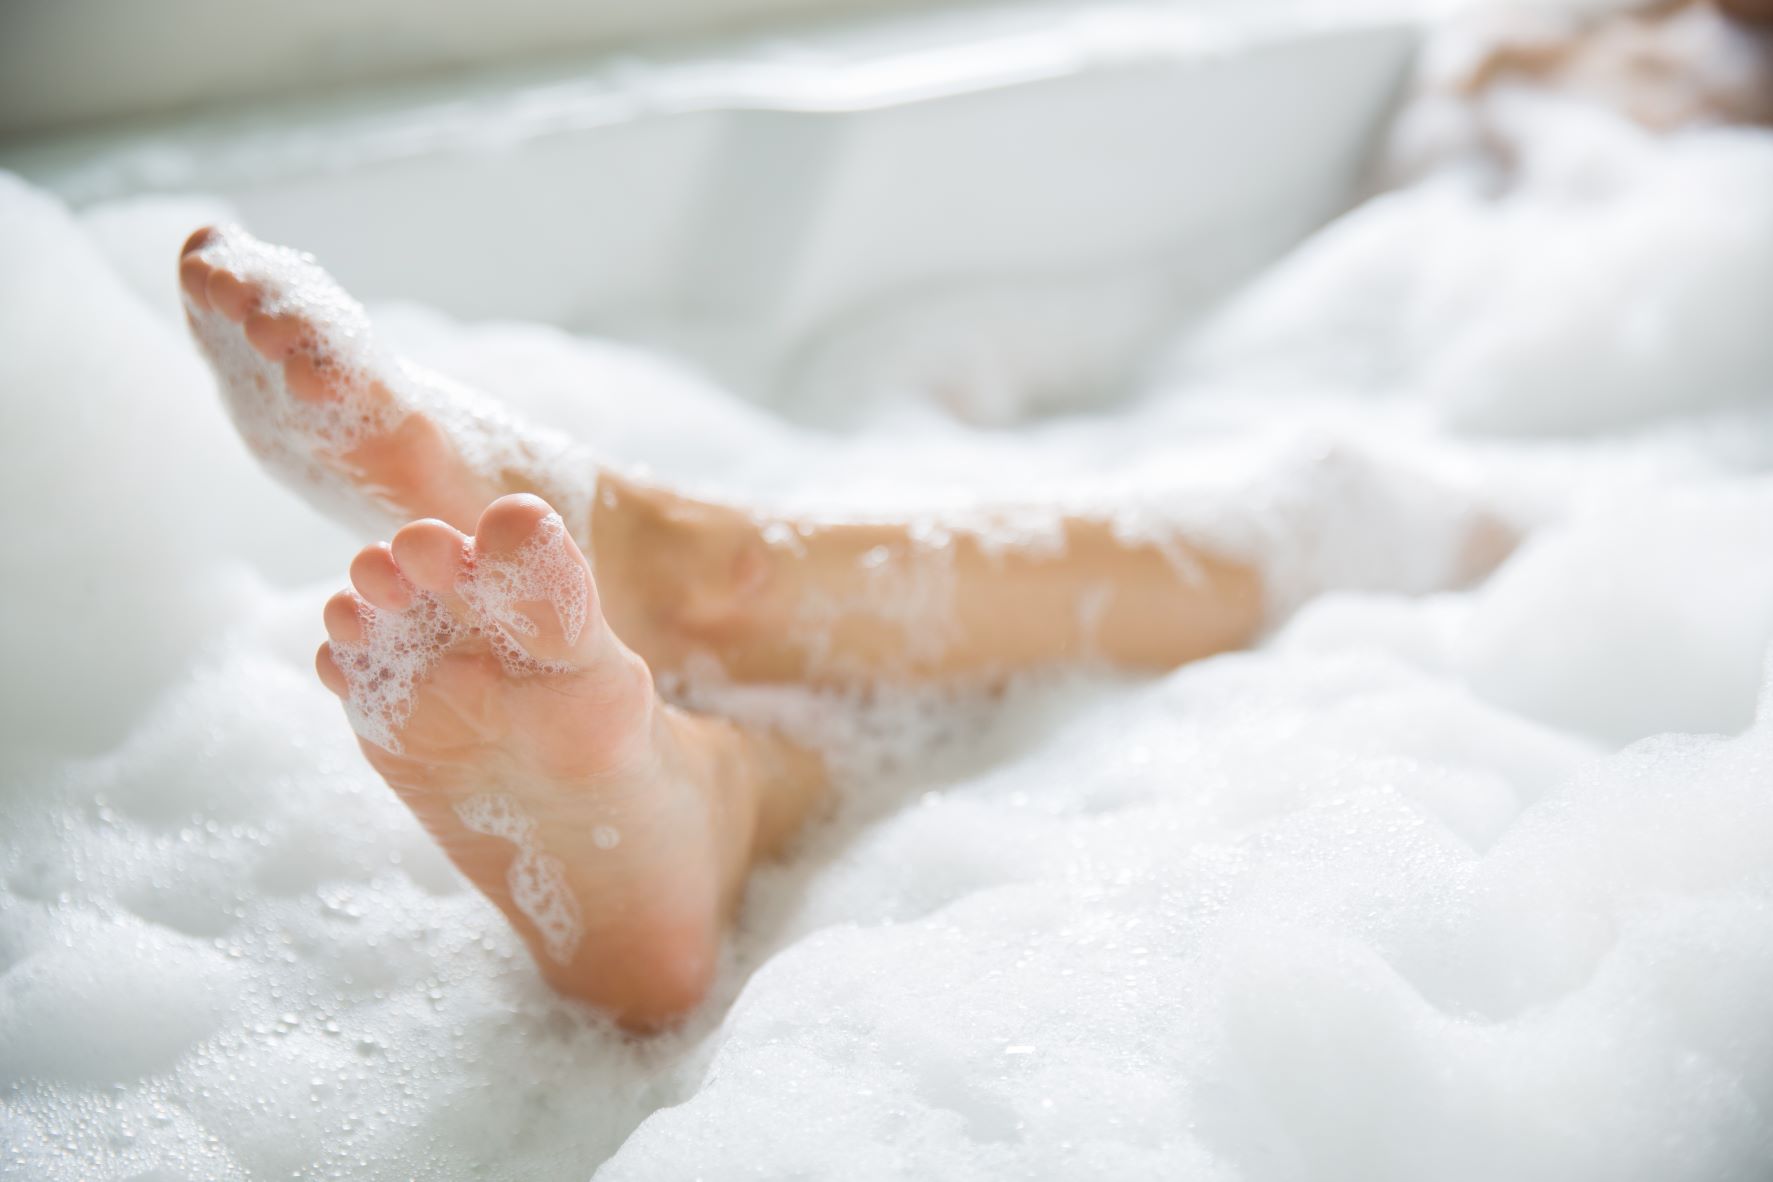 Feet in bubble bath